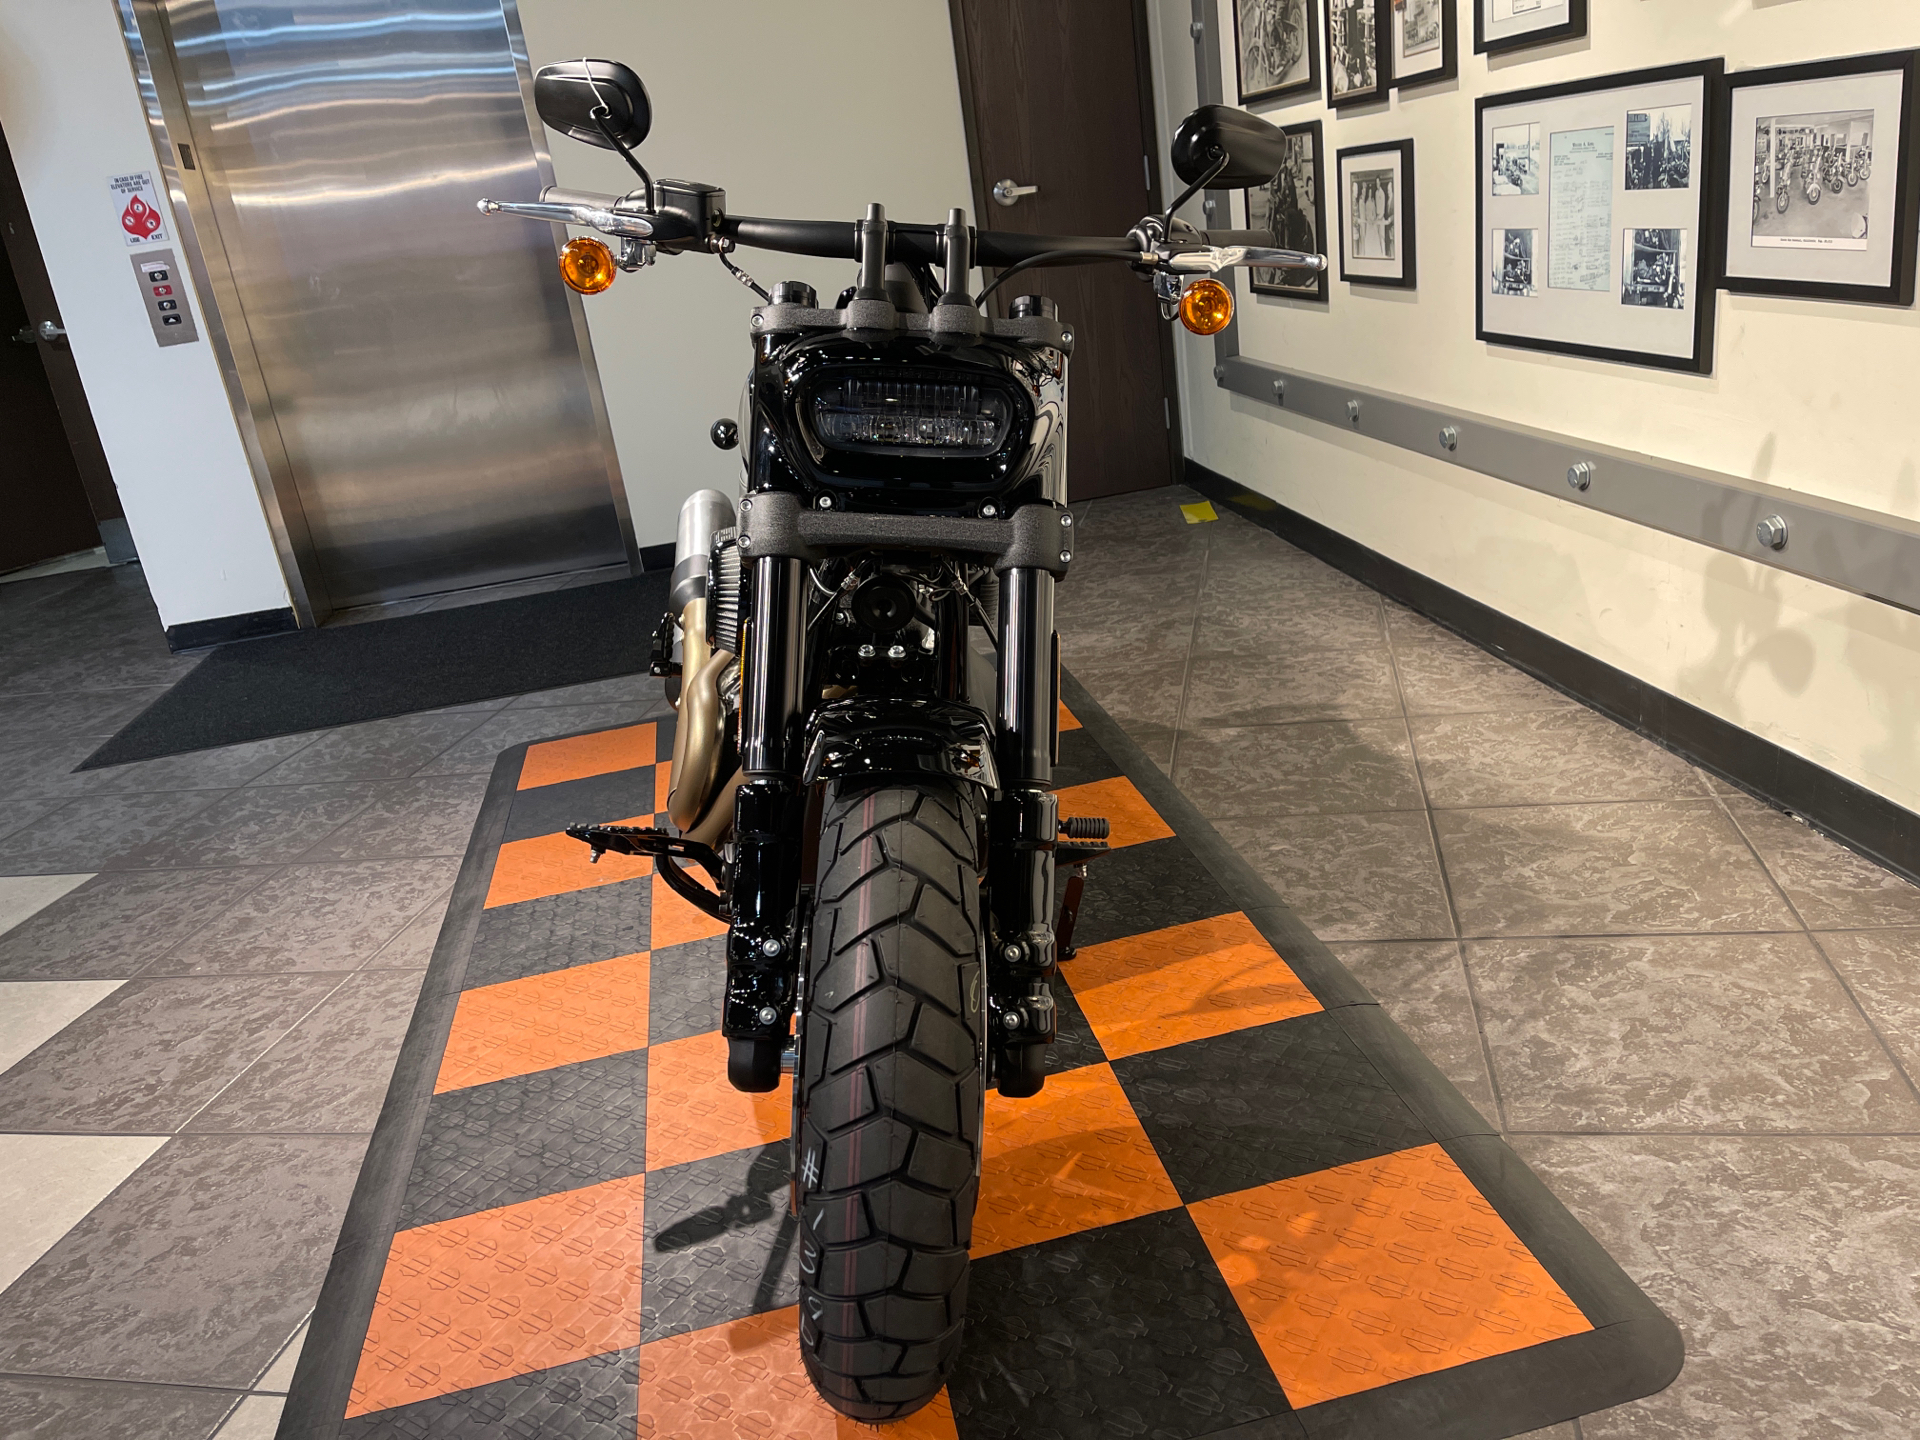 2022 Harley-Davidson Fat Bob® 114 in Baldwin Park, California - Photo 11